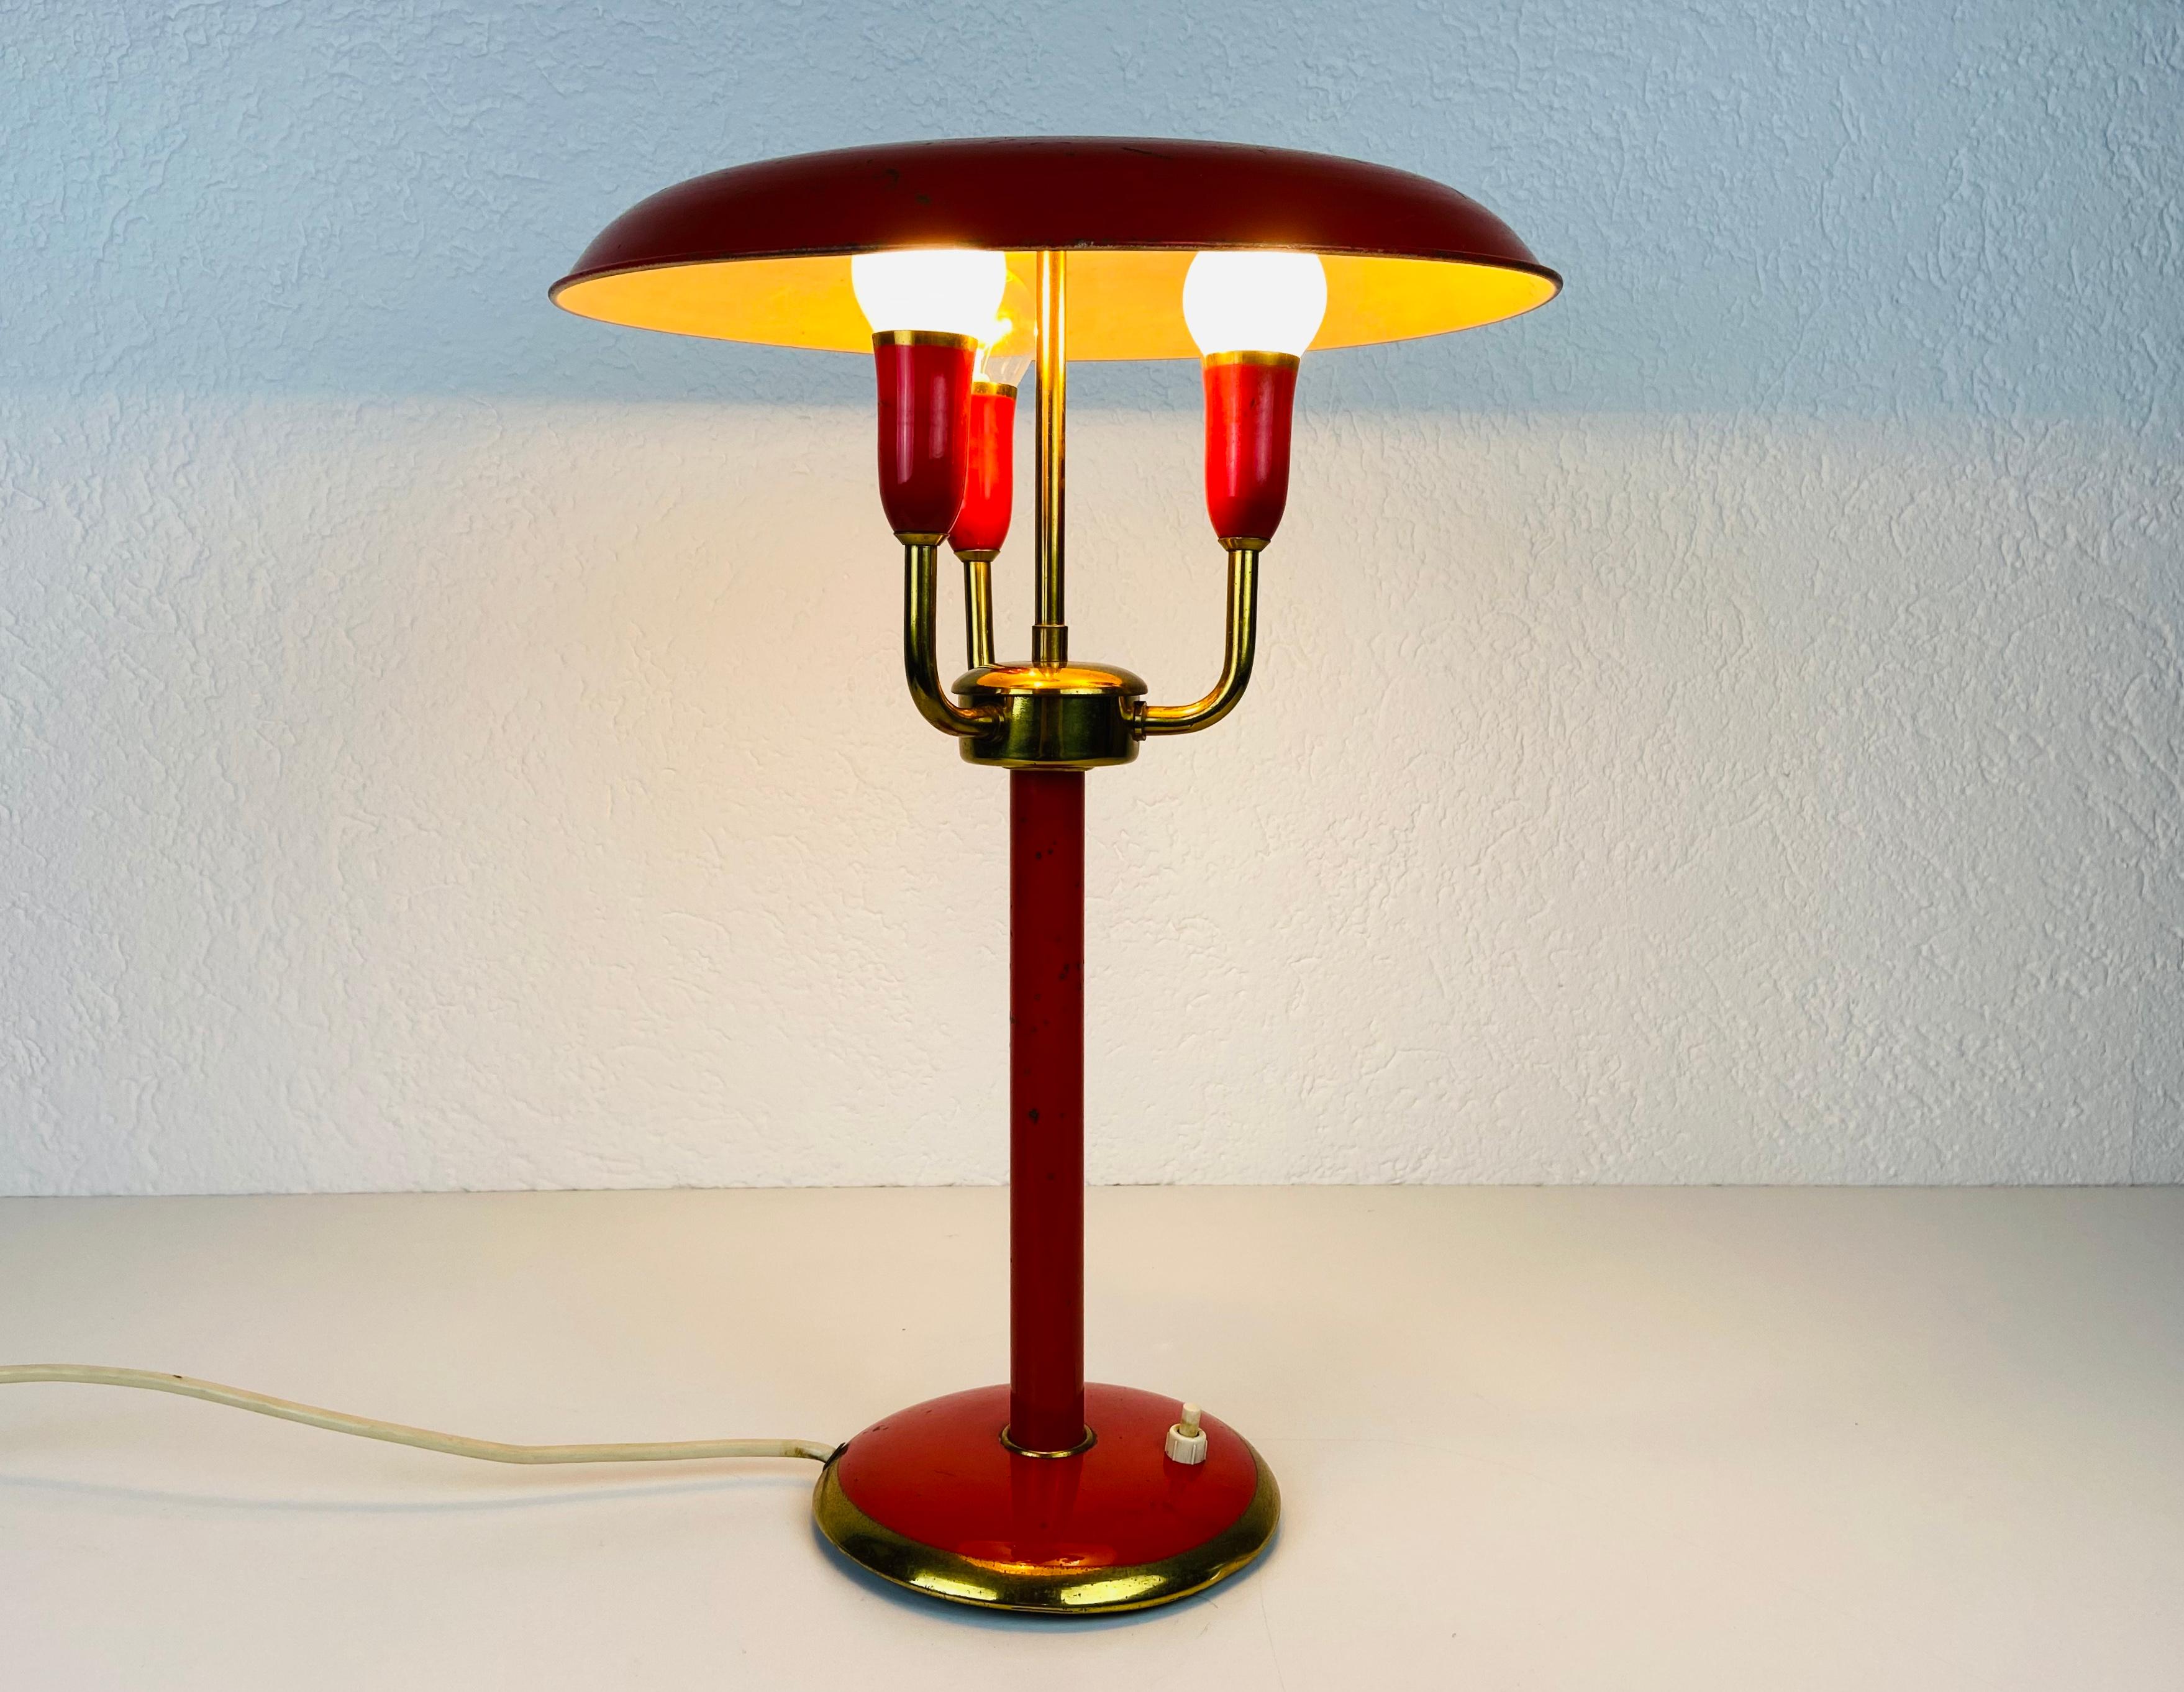 Une lampe de table italienne fabriquée dans les années 1960. Fabriqué en métal et en laiton. L'éclairage a un design exceptionnel avec 3 bras.

Le luminaire nécessite trois ampoules E14. Fonctionne avec les deux 120/220V. Bon état